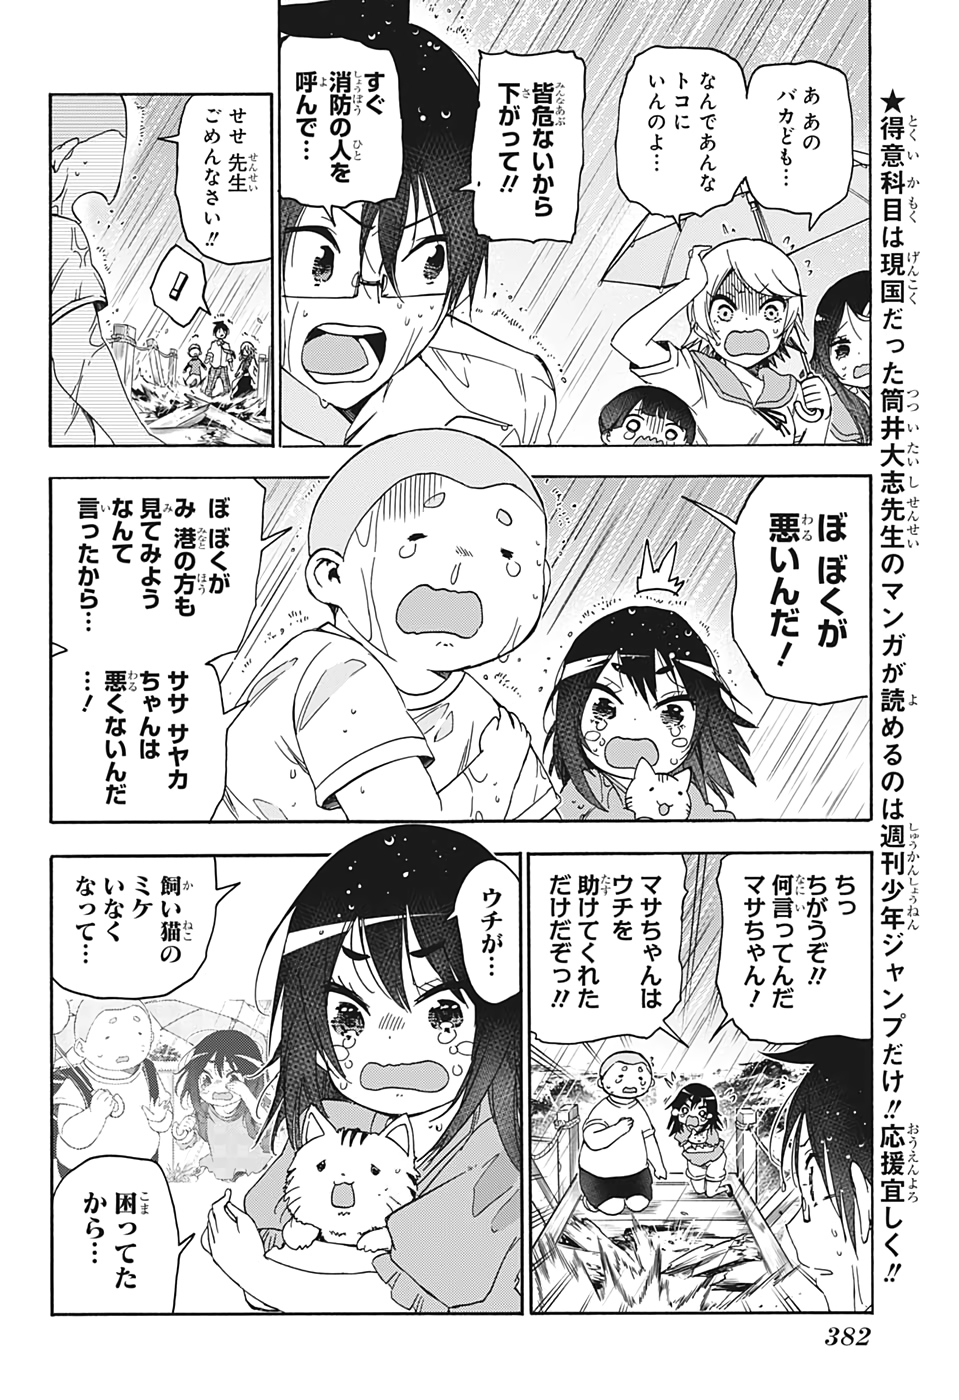 Bokutachi wa Benkyou ga Dekinai - Chapter 175 - Page 2